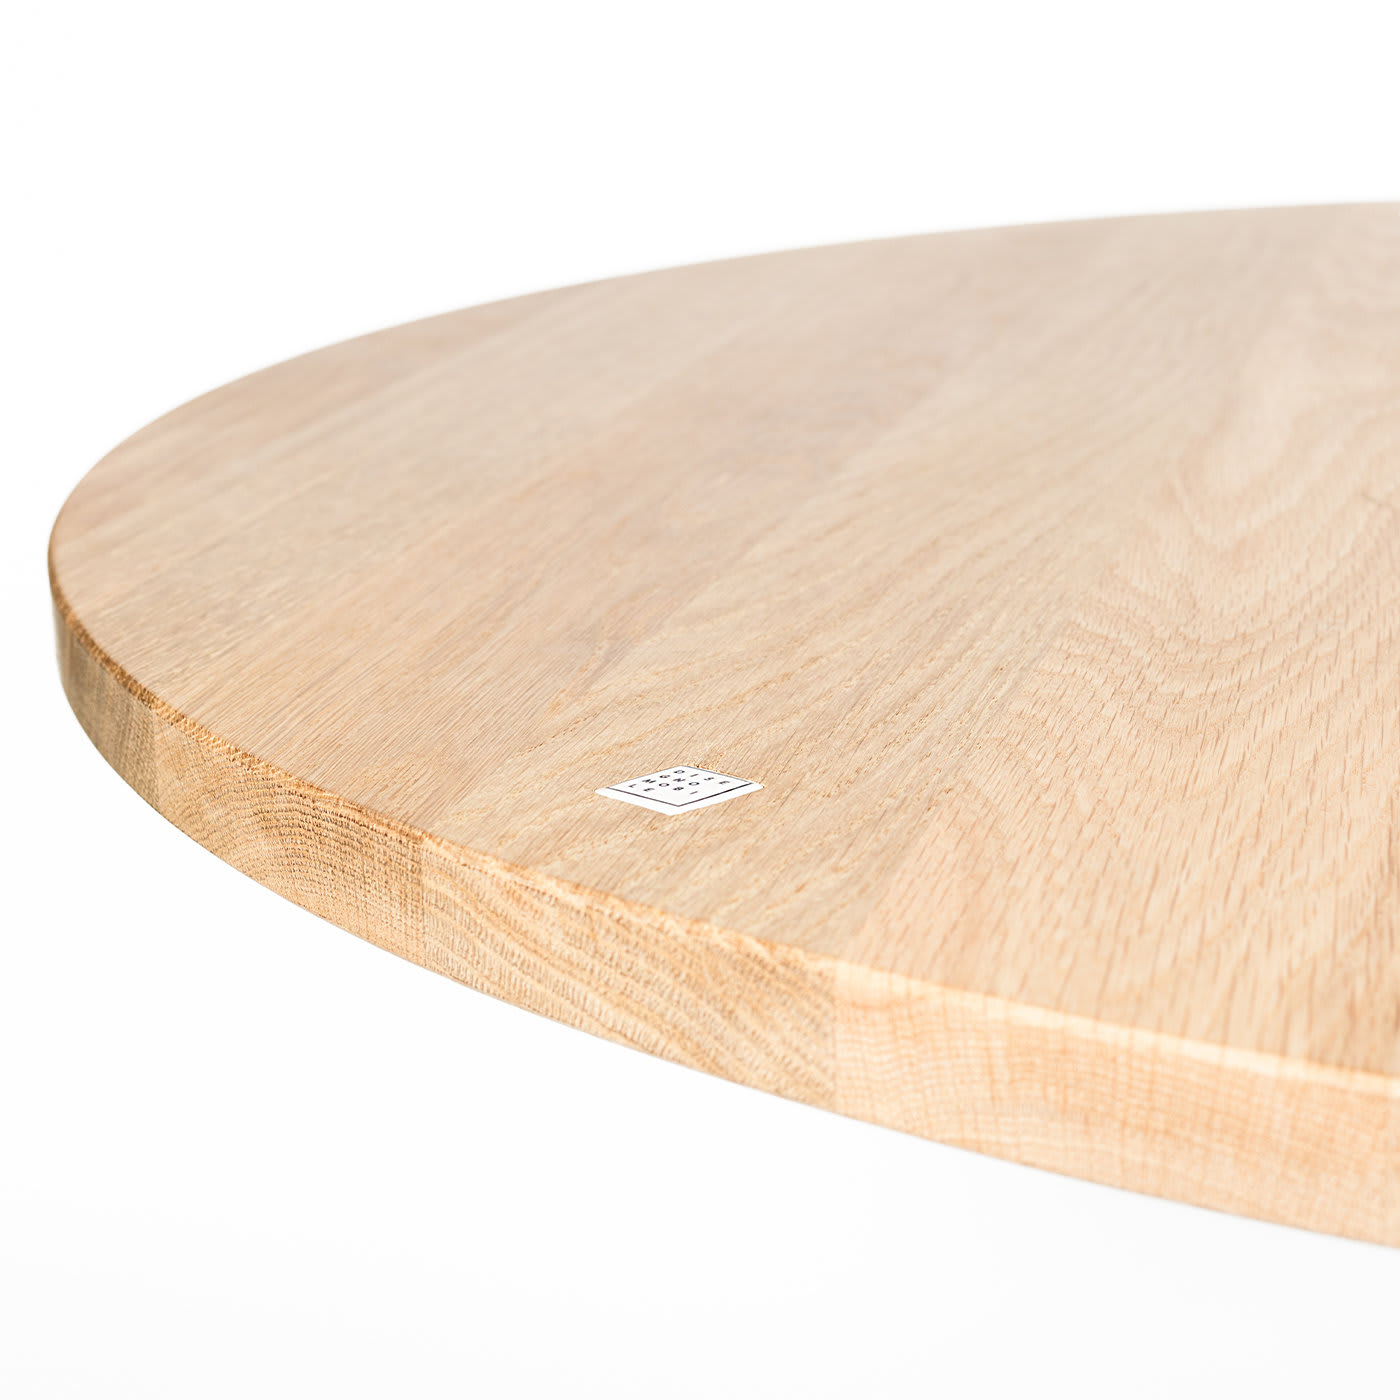 Rata Round Oak Table - Disegno Mobile